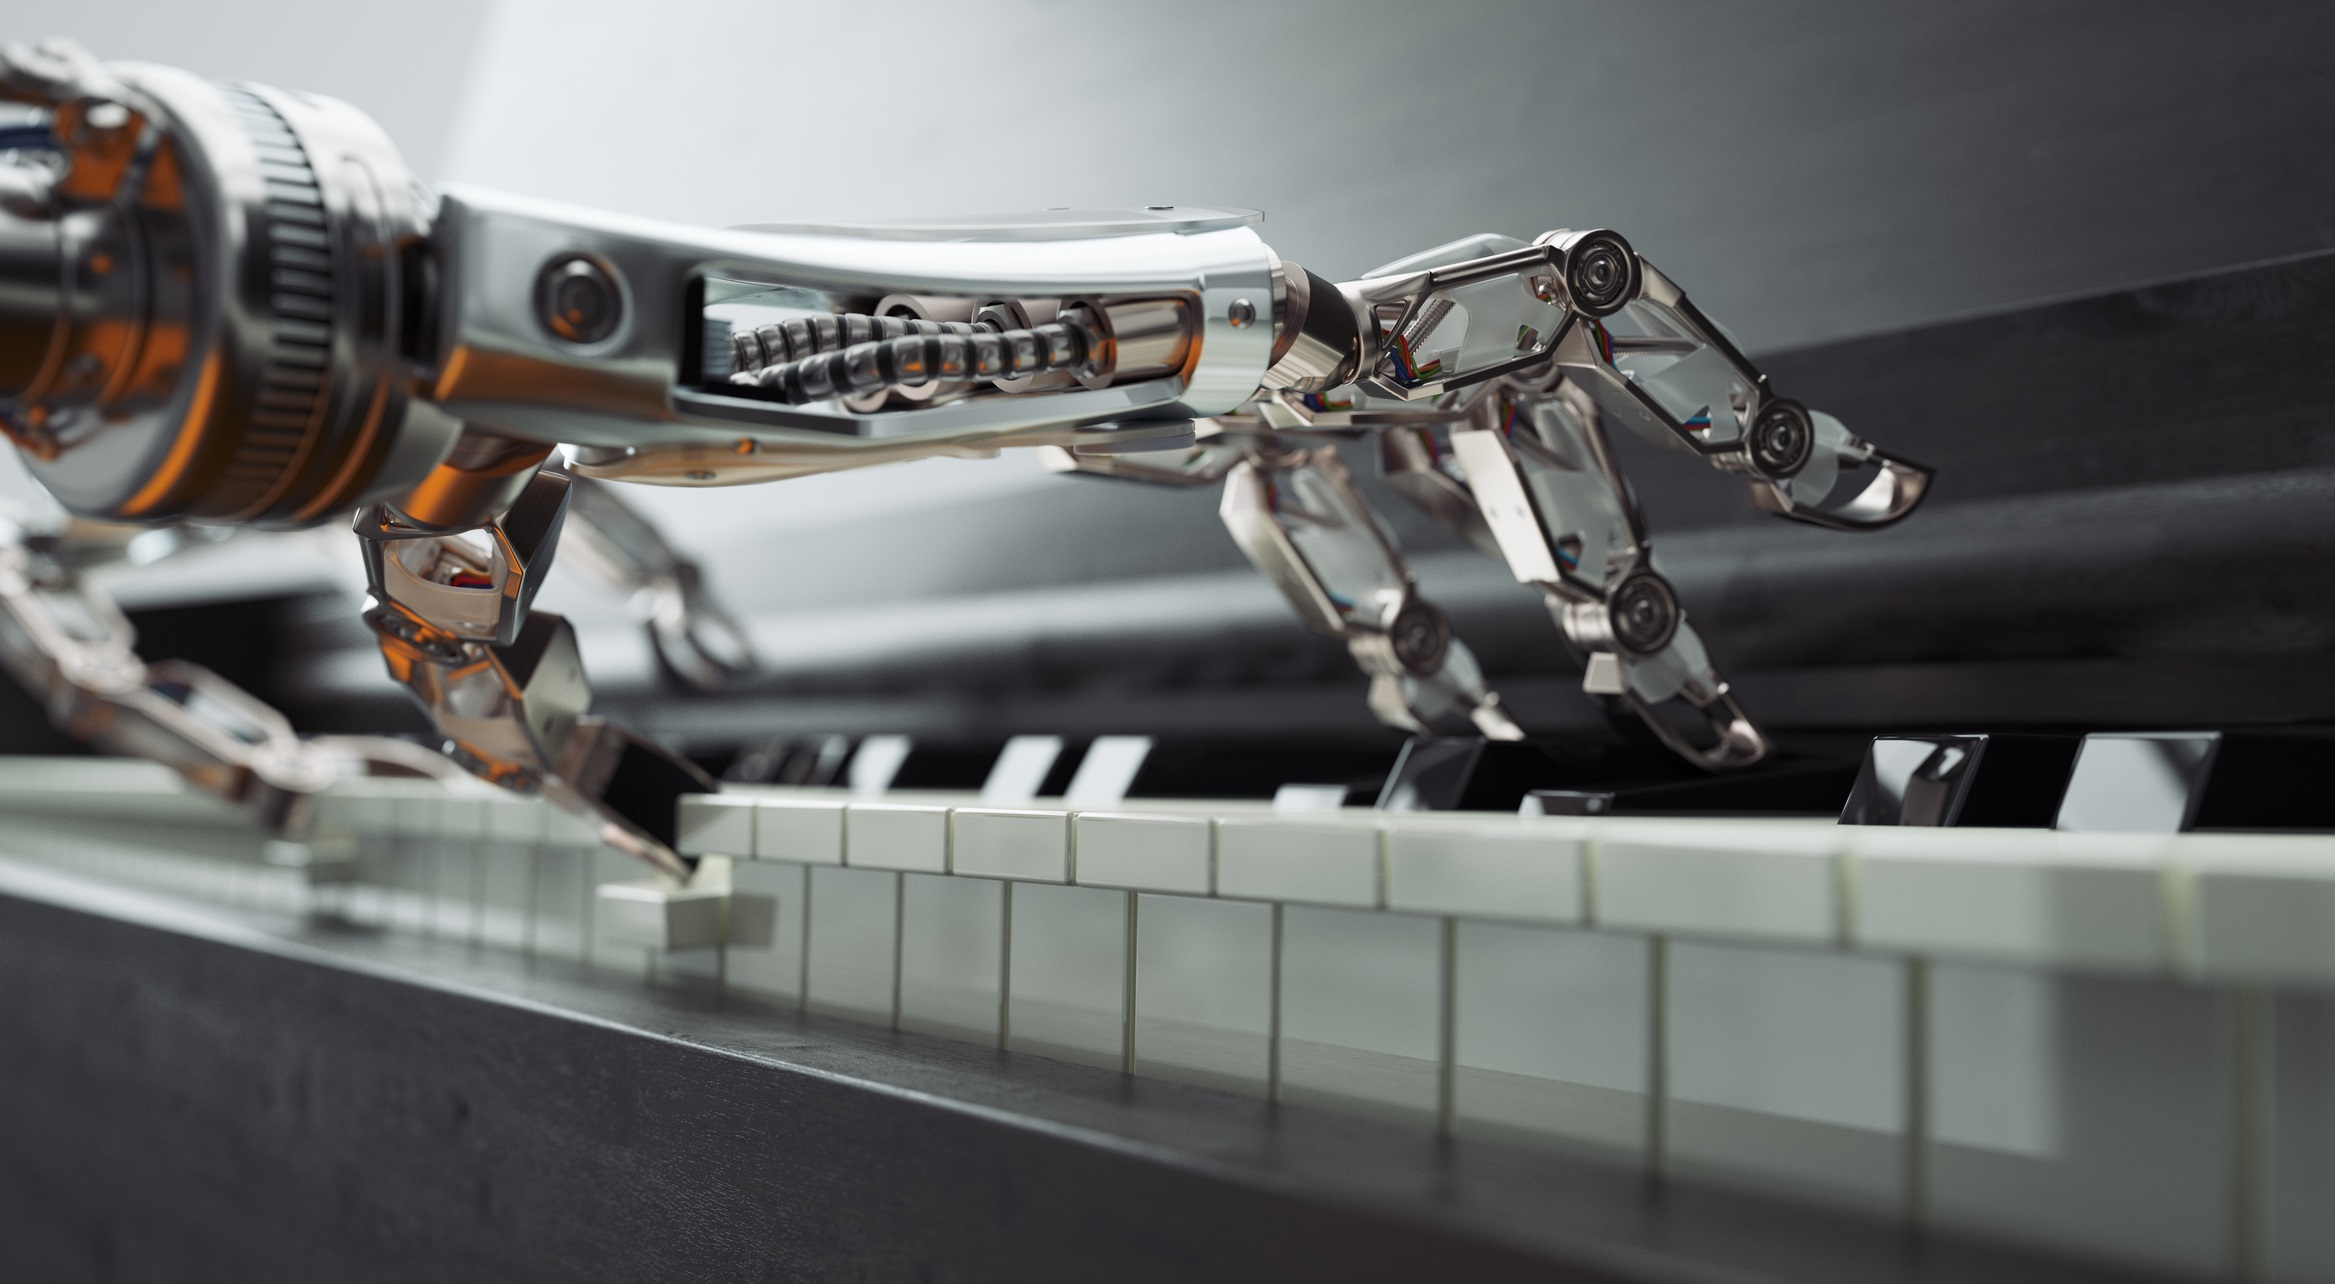 Industrija i mehanika: kako će nam roboti pomoći da vidimo i gradimo budućnost